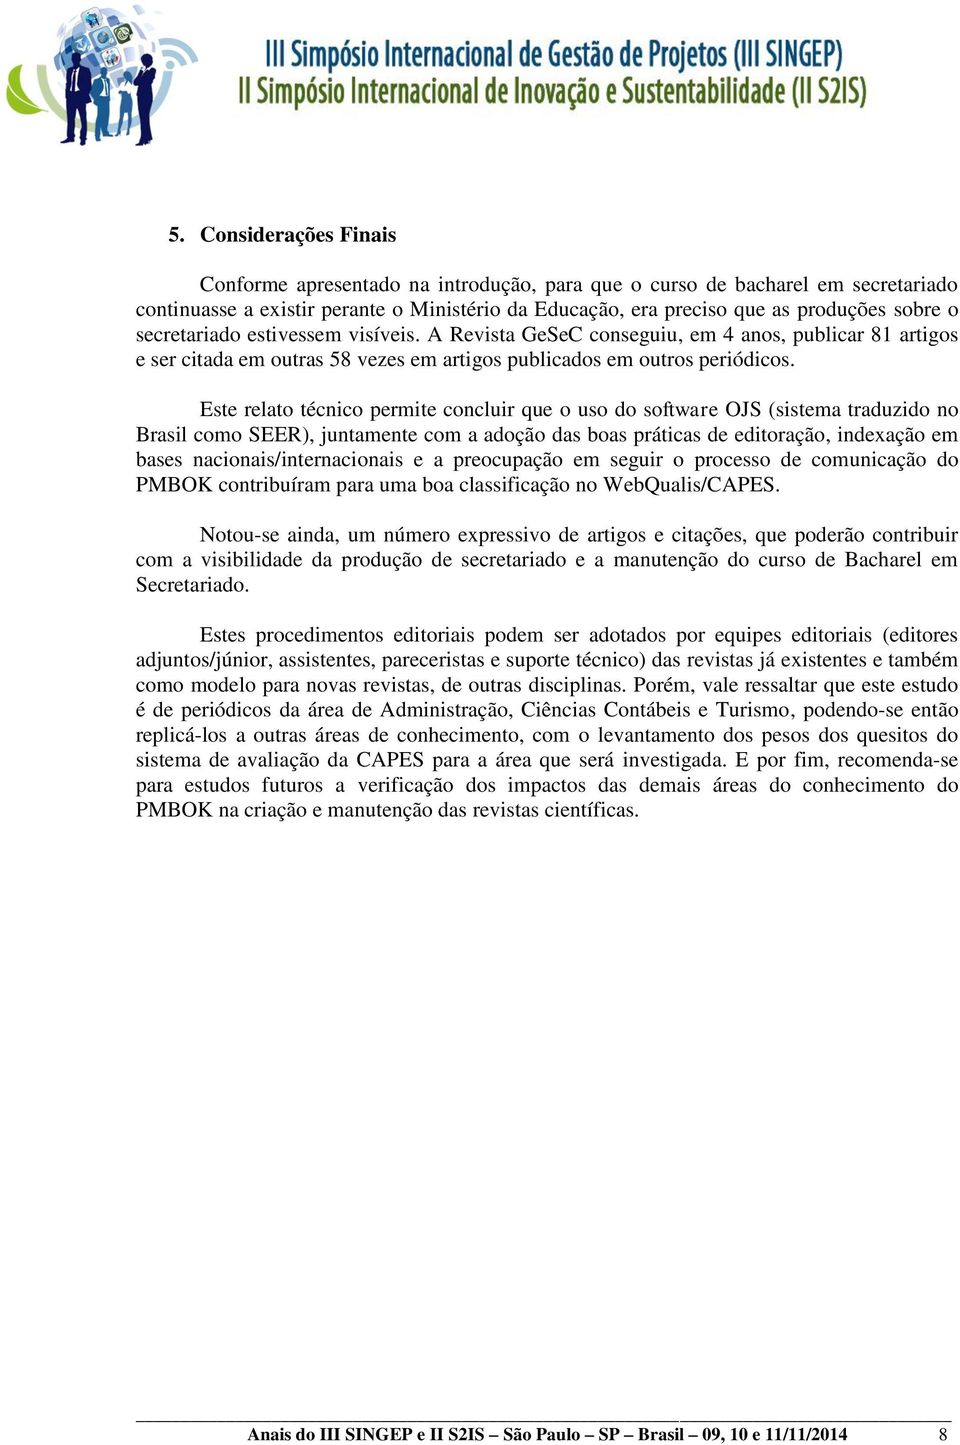 Este relato técnico permite concluir que o uso do software OJS (sistema traduzido no Brasil como SEER), juntamente com a adoção das boas práticas de editoração, indexação em bases